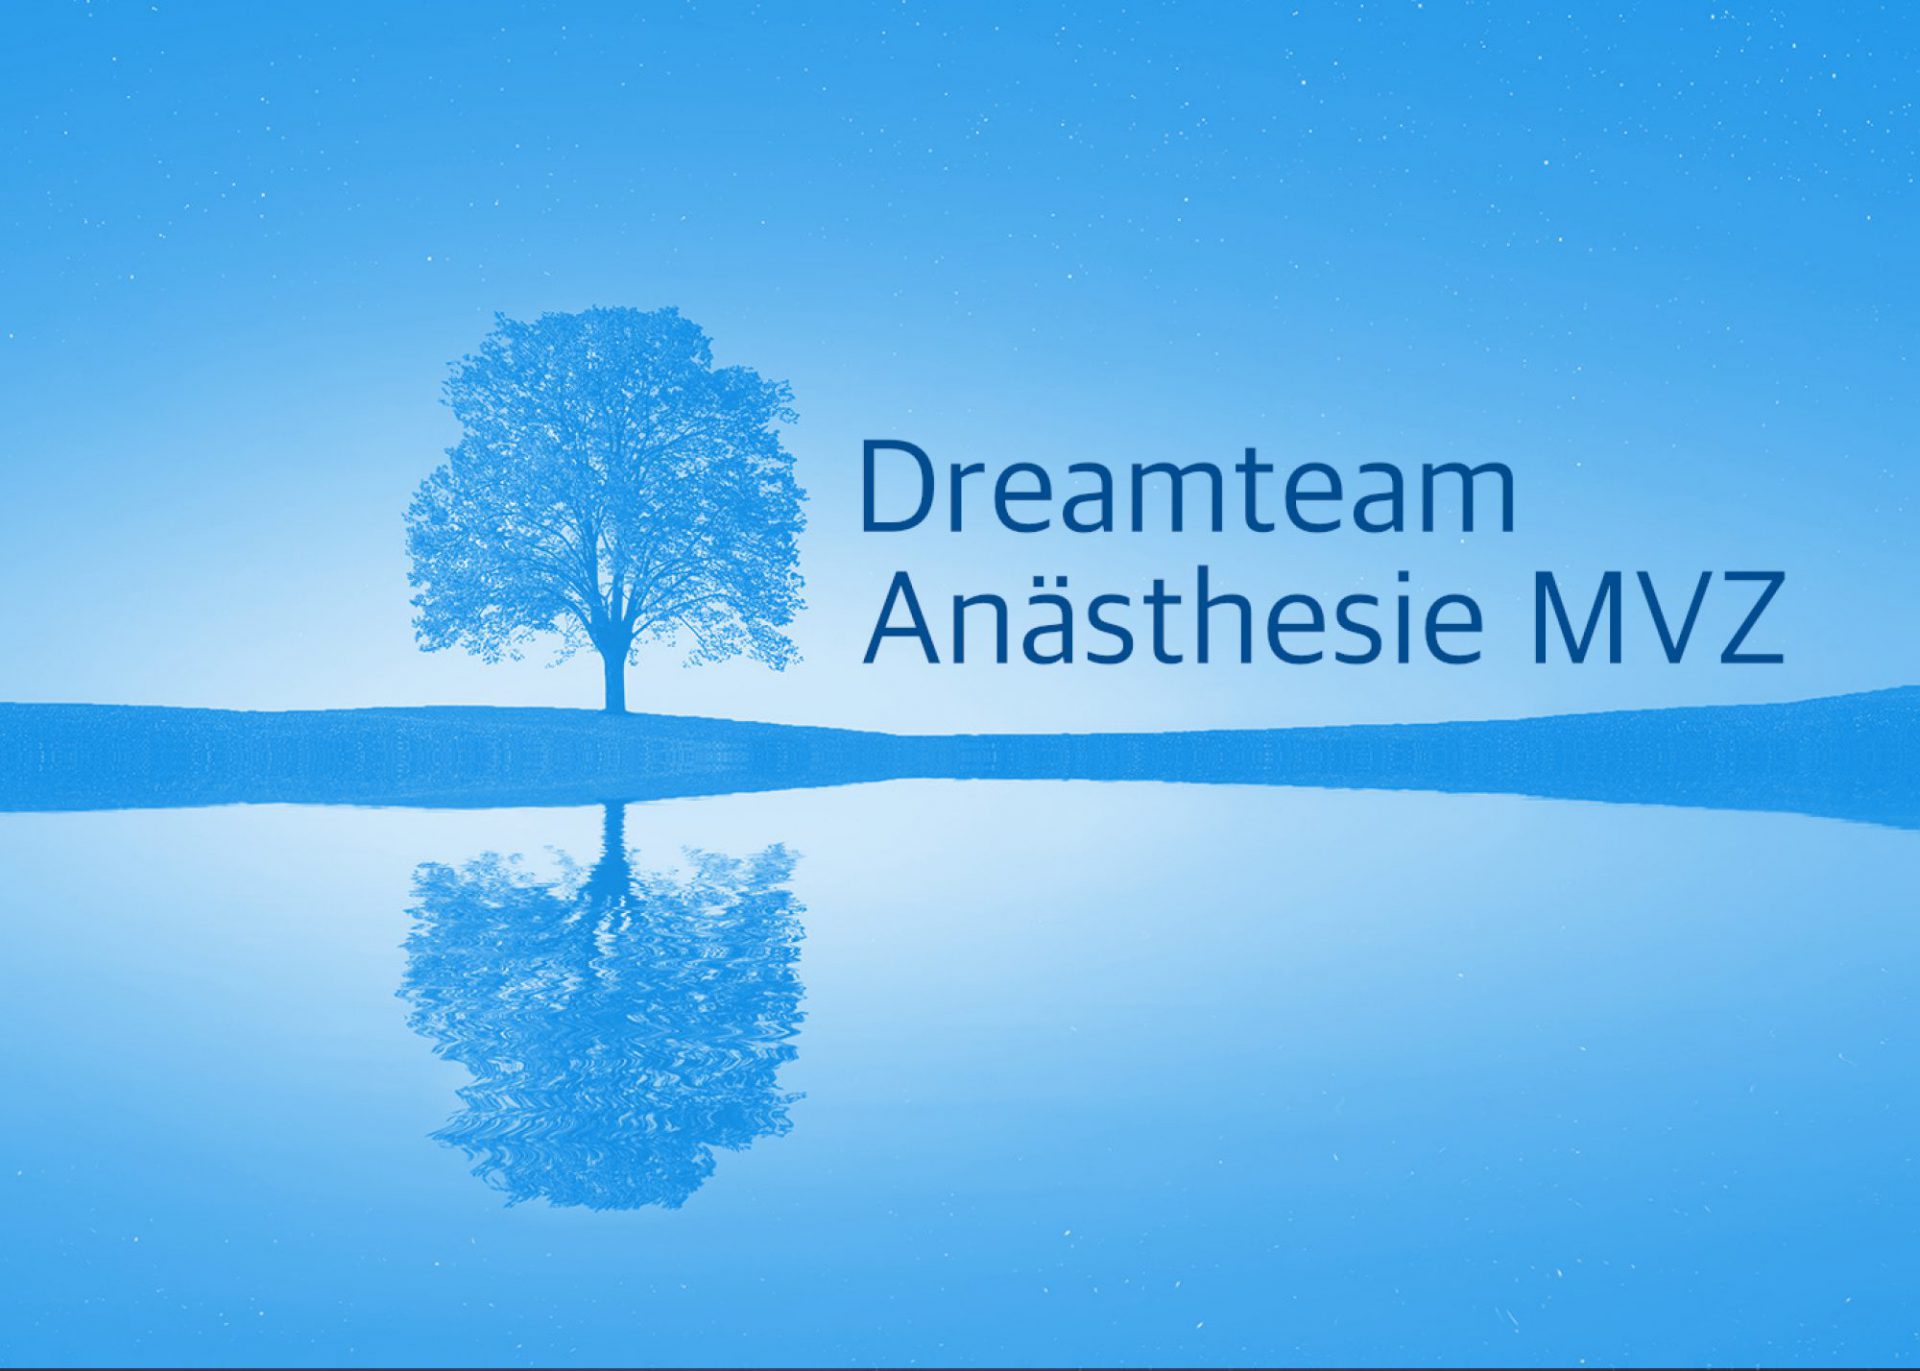 Dreamteam Anästhesie MVZ